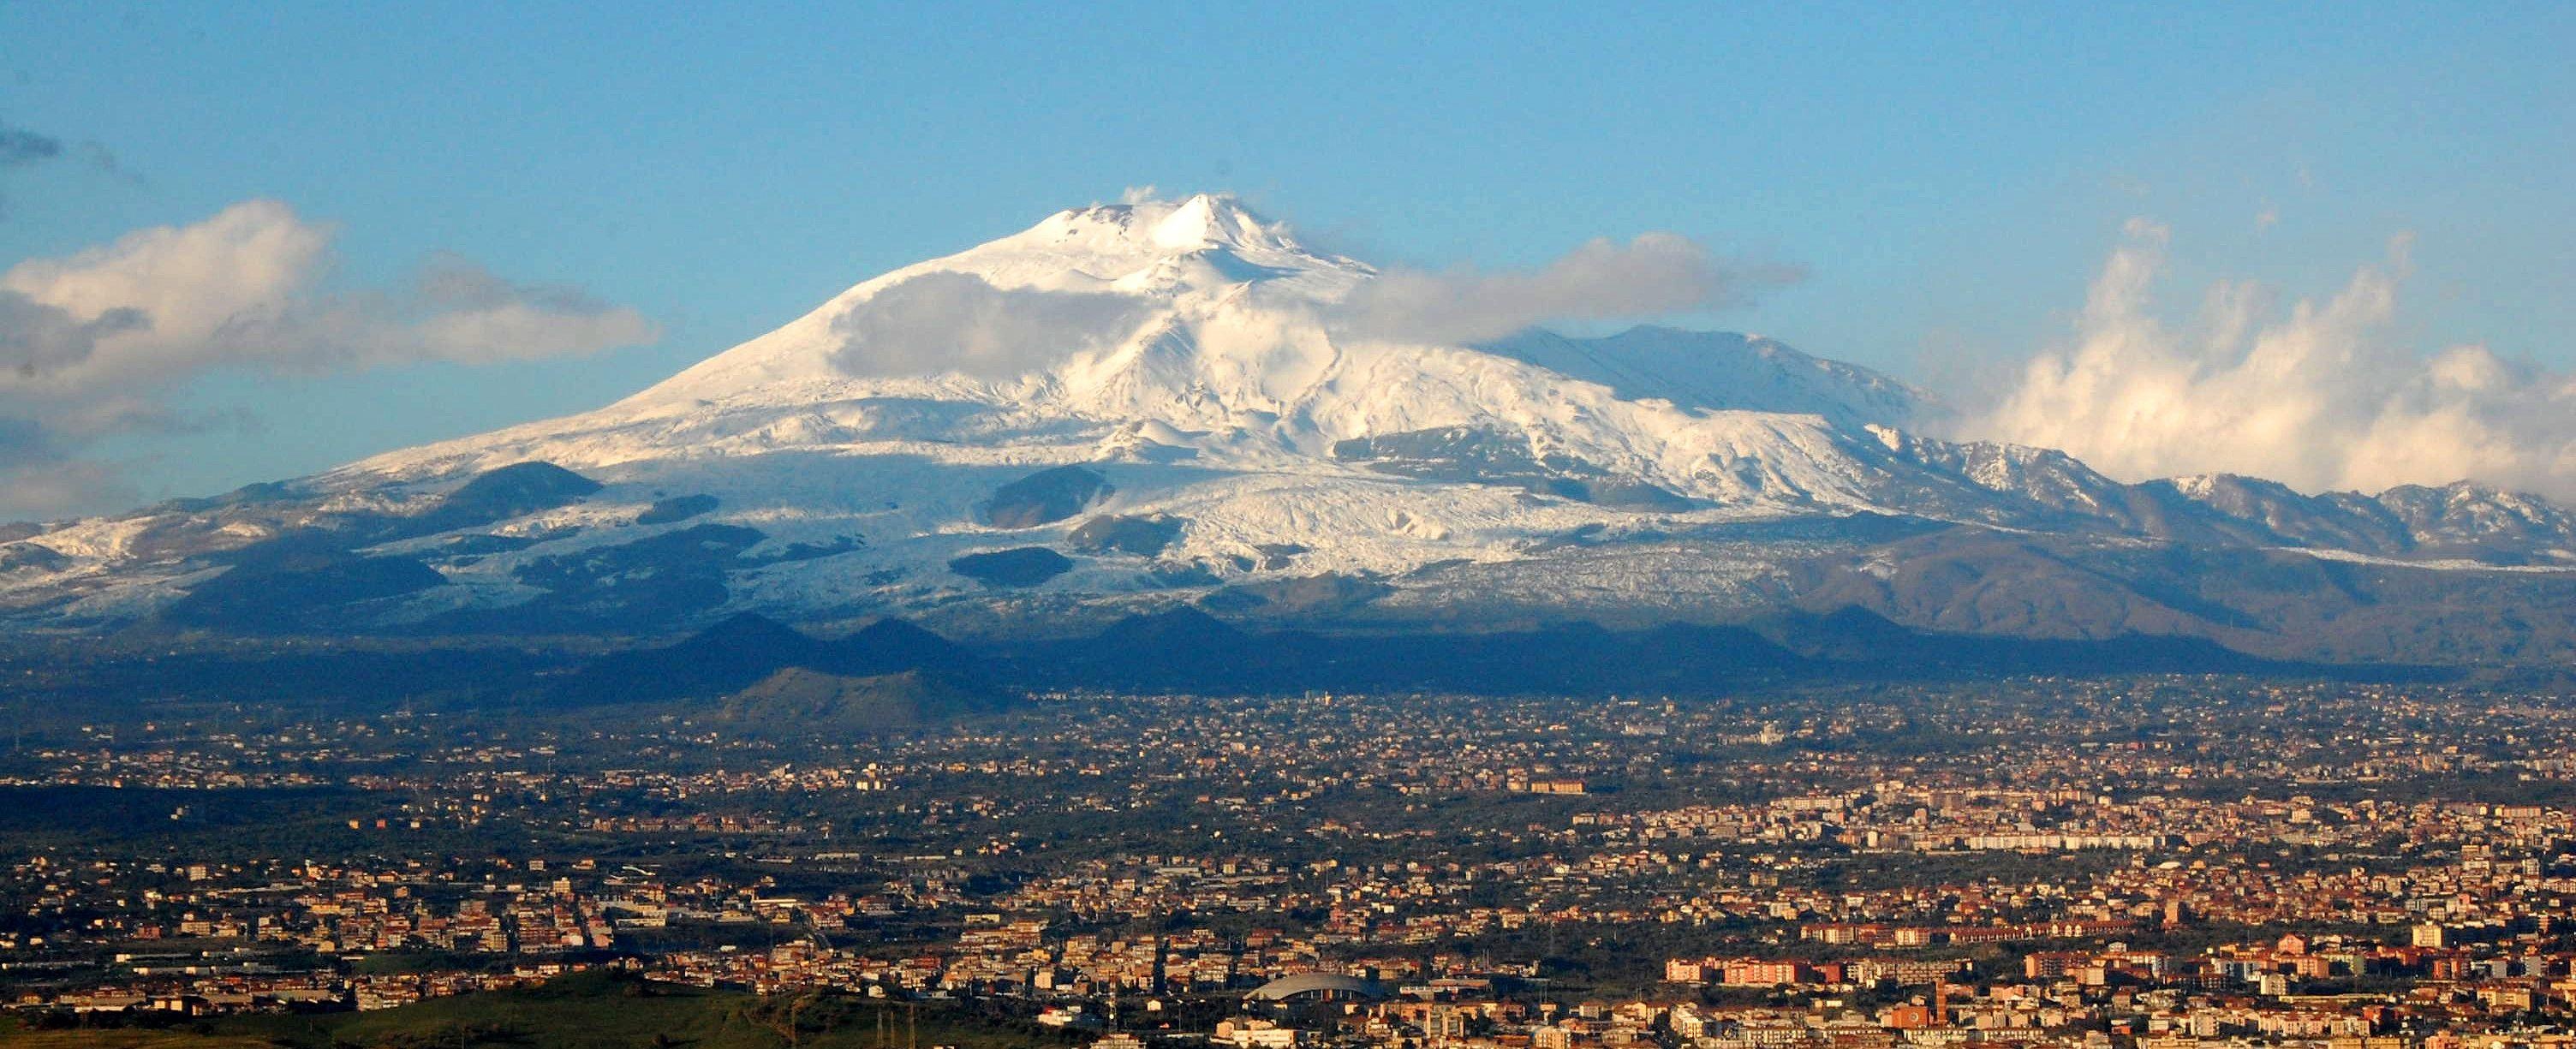 Mount Etna, Catania Sicily, Vibrant wallpapers, Cultural hotspot, 3010x1230 Dual Screen Desktop